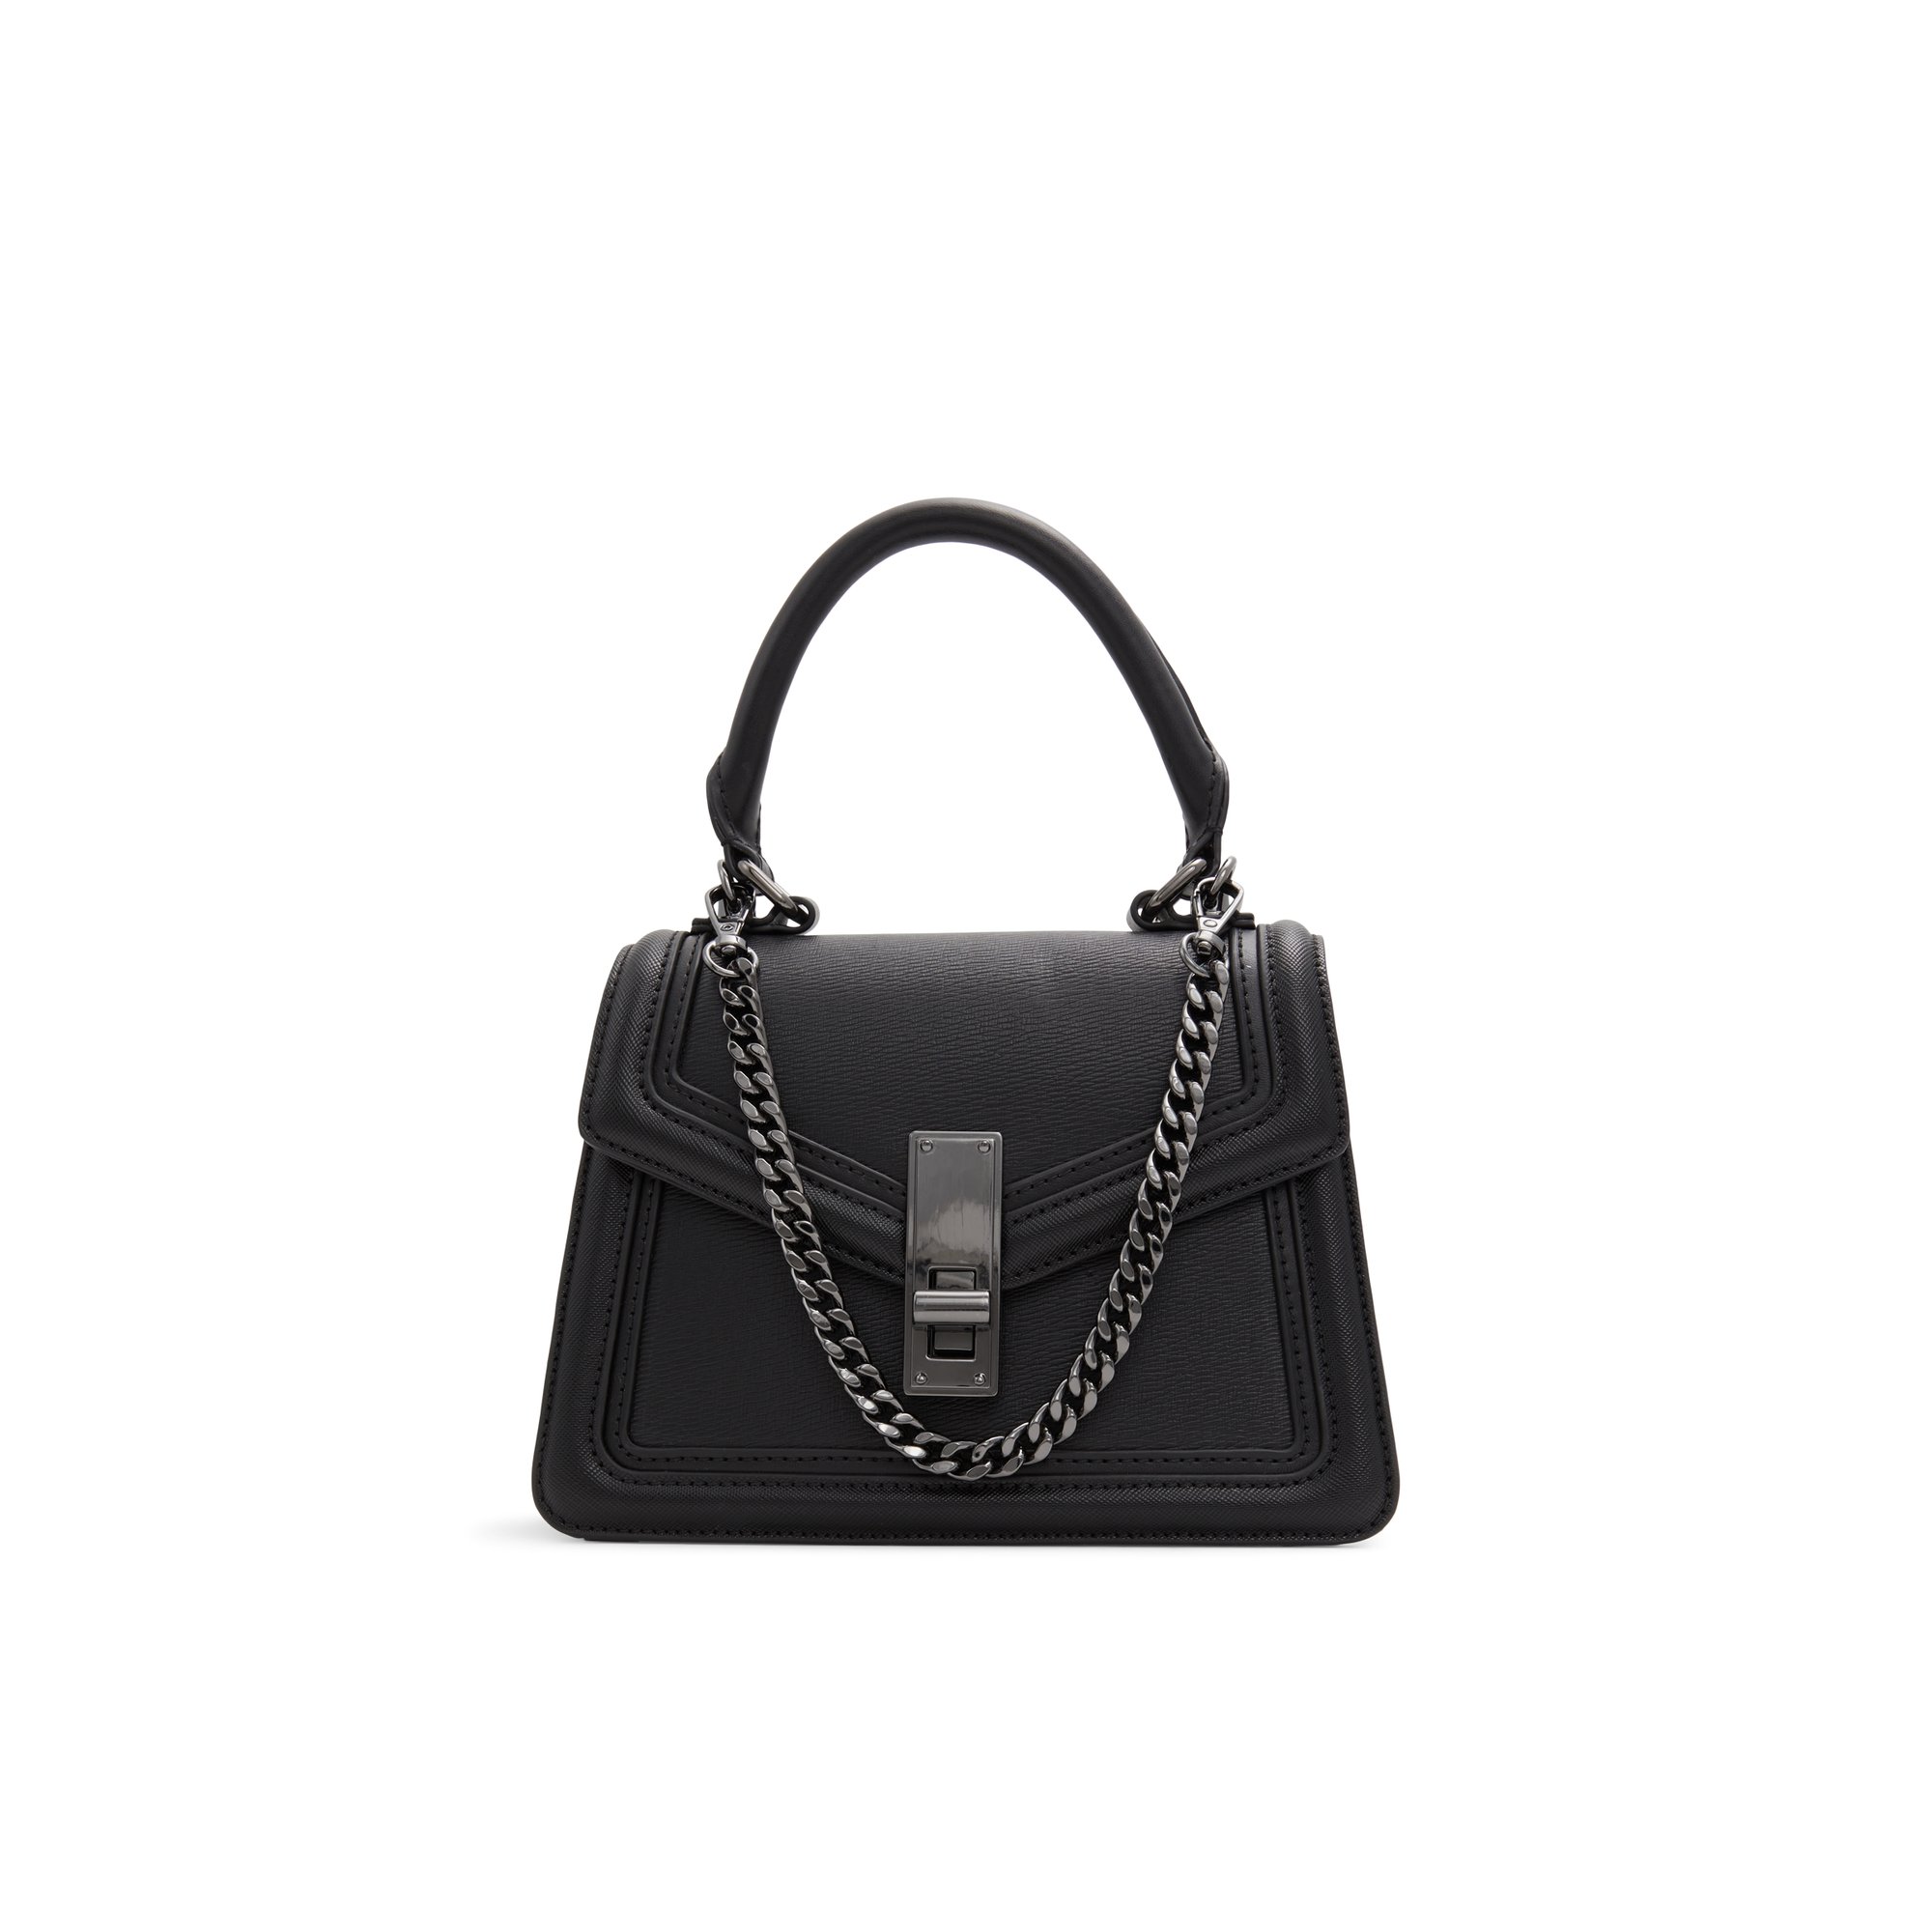 ALDO Emalineex - Women's Handbag - Black